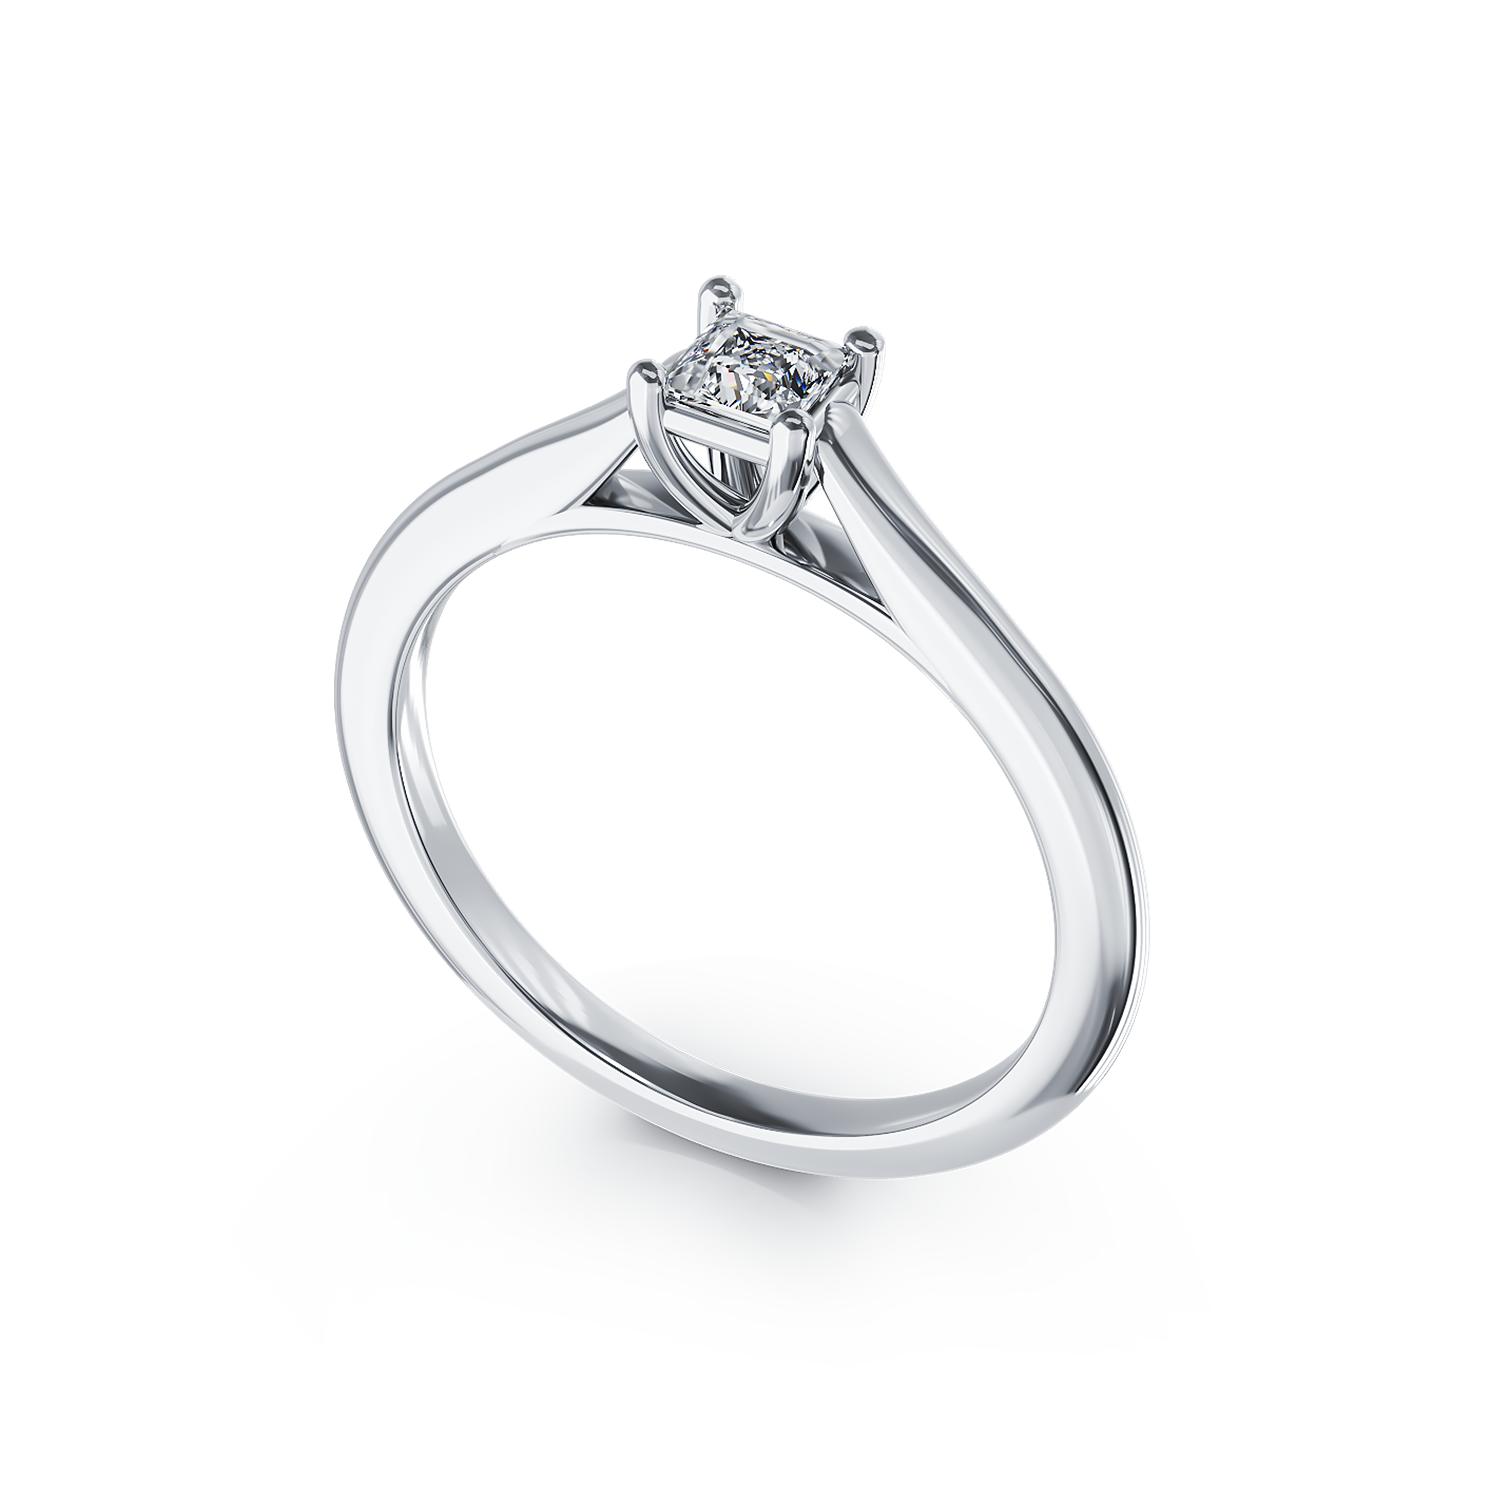 Inel de logodna din platina cu un diamant solitaire de 0.2ct